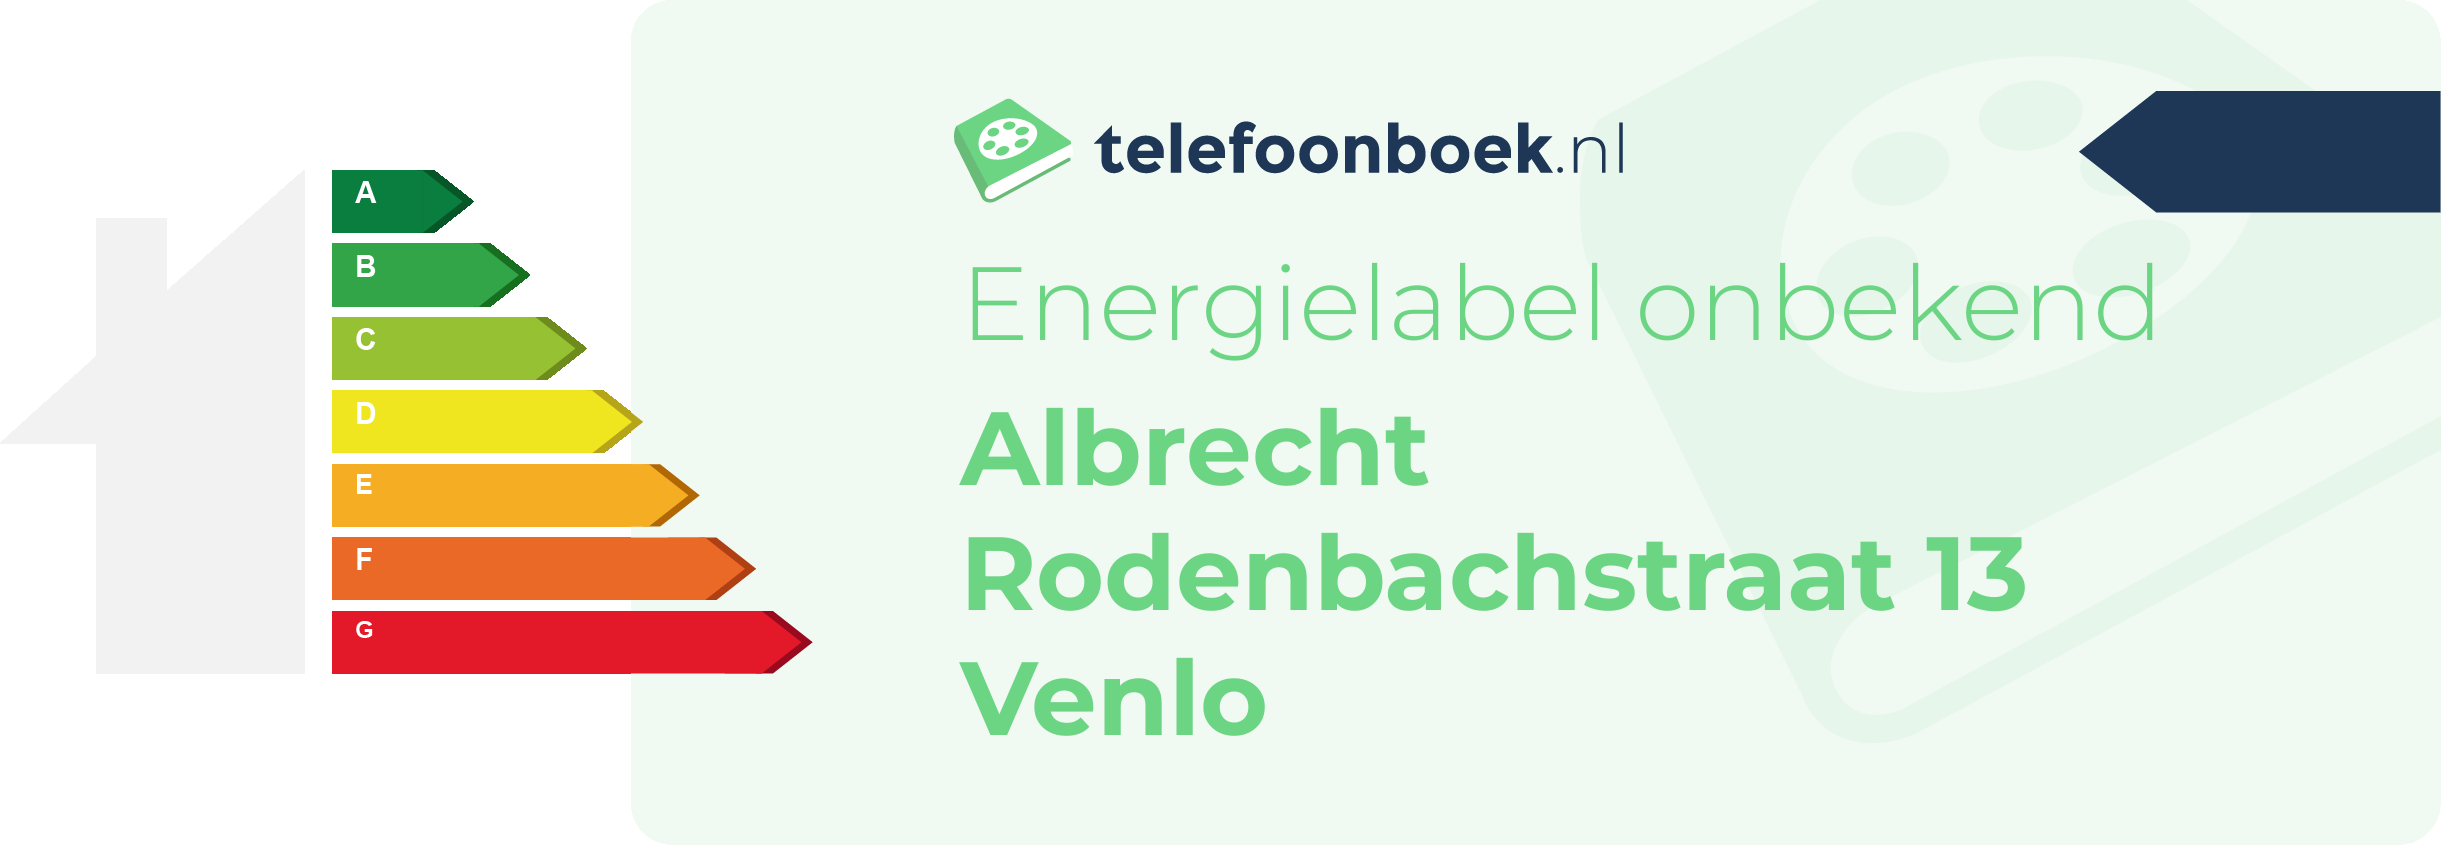 Energielabel Albrecht Rodenbachstraat 13 Venlo